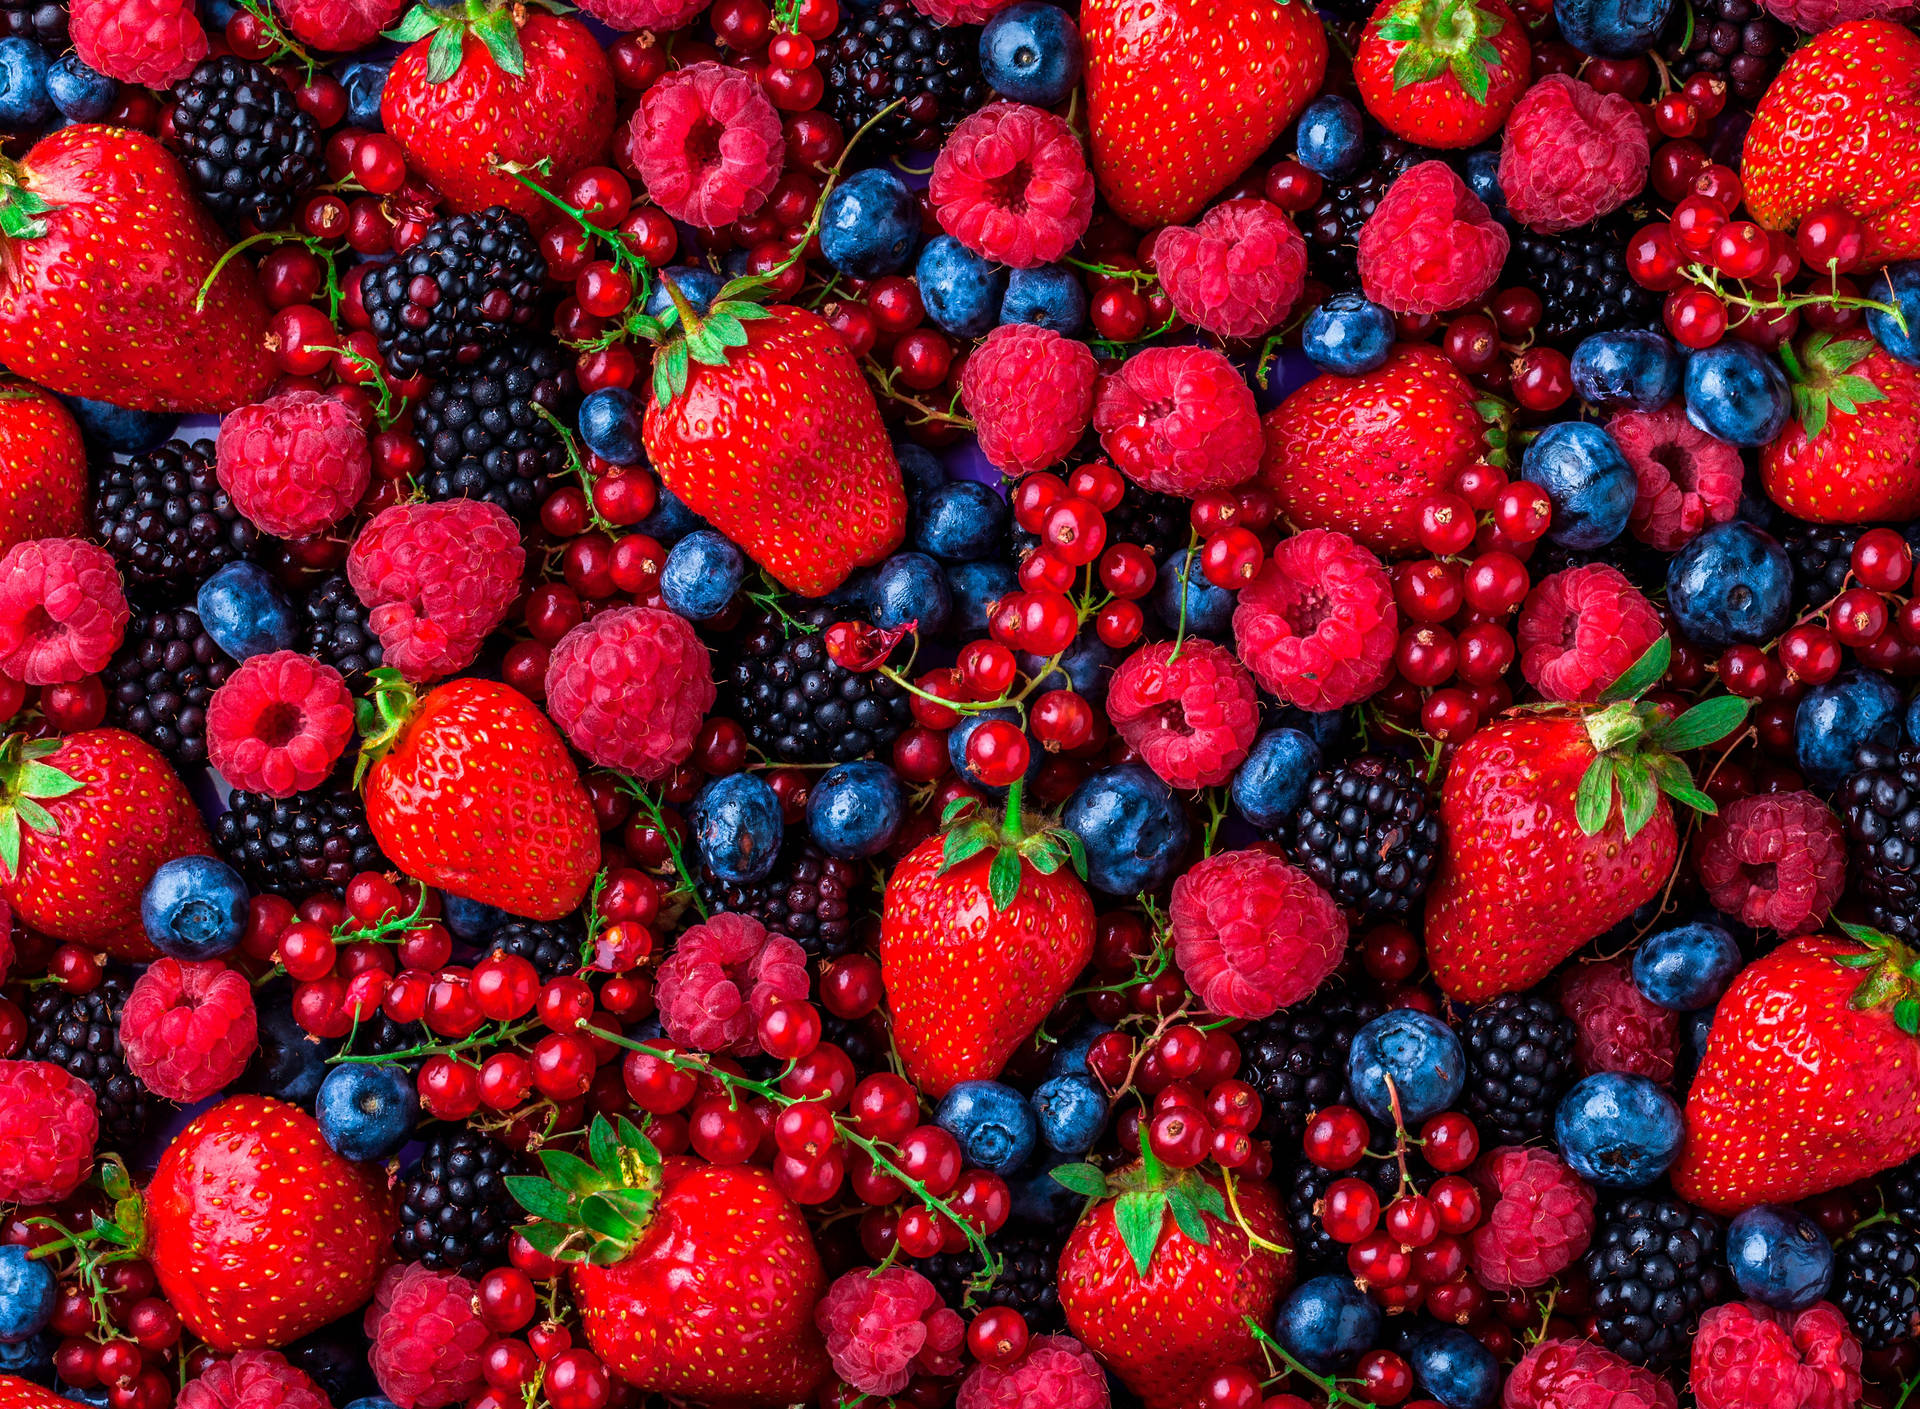 Raspberries Pictures Wallpaper